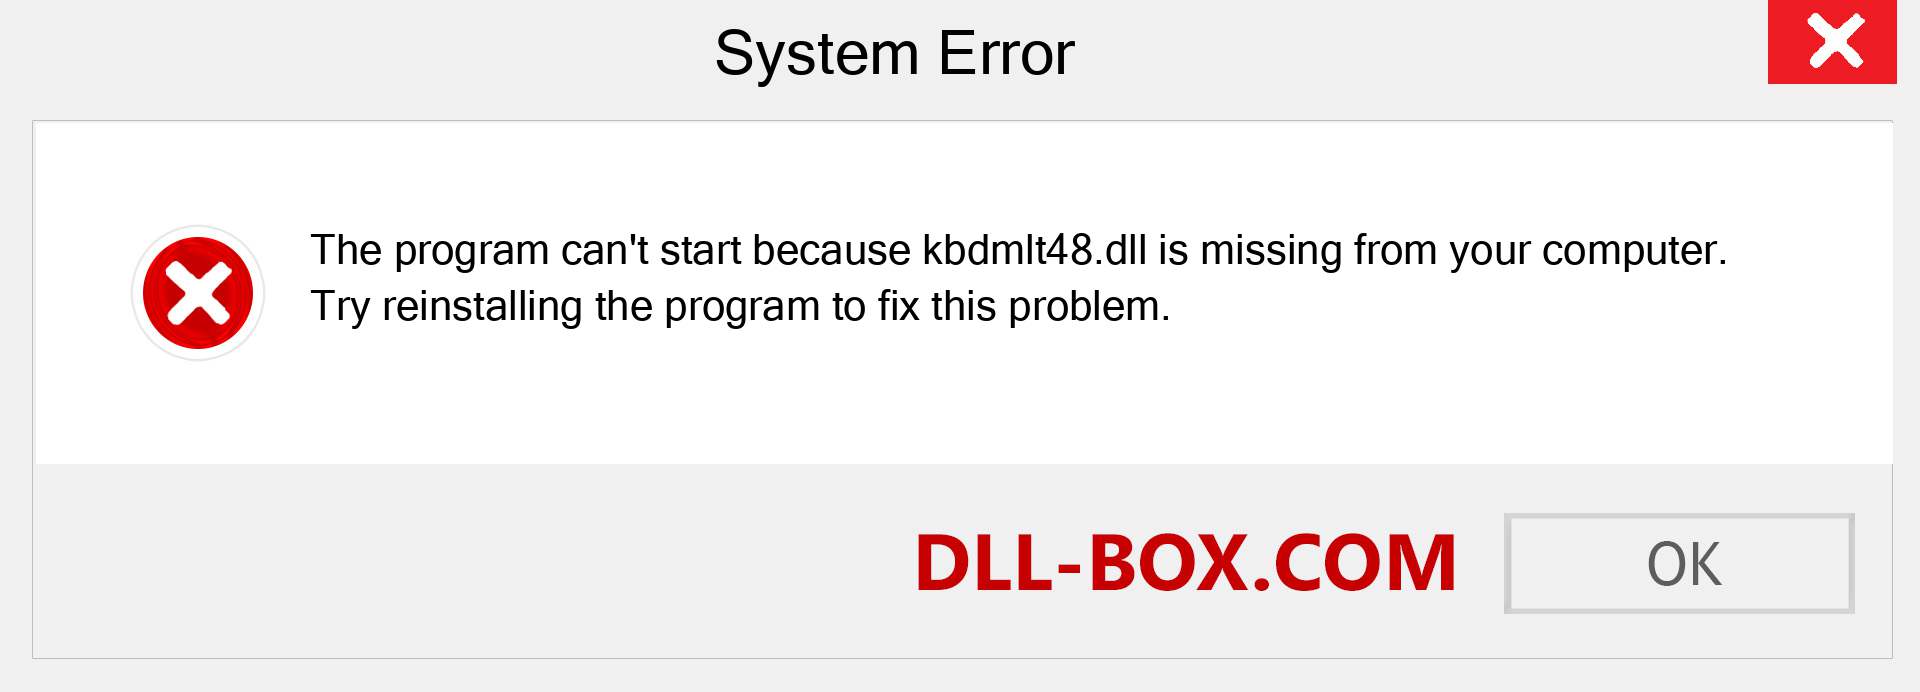  kbdmlt48.dll file is missing?. Download for Windows 7, 8, 10 - Fix  kbdmlt48 dll Missing Error on Windows, photos, images